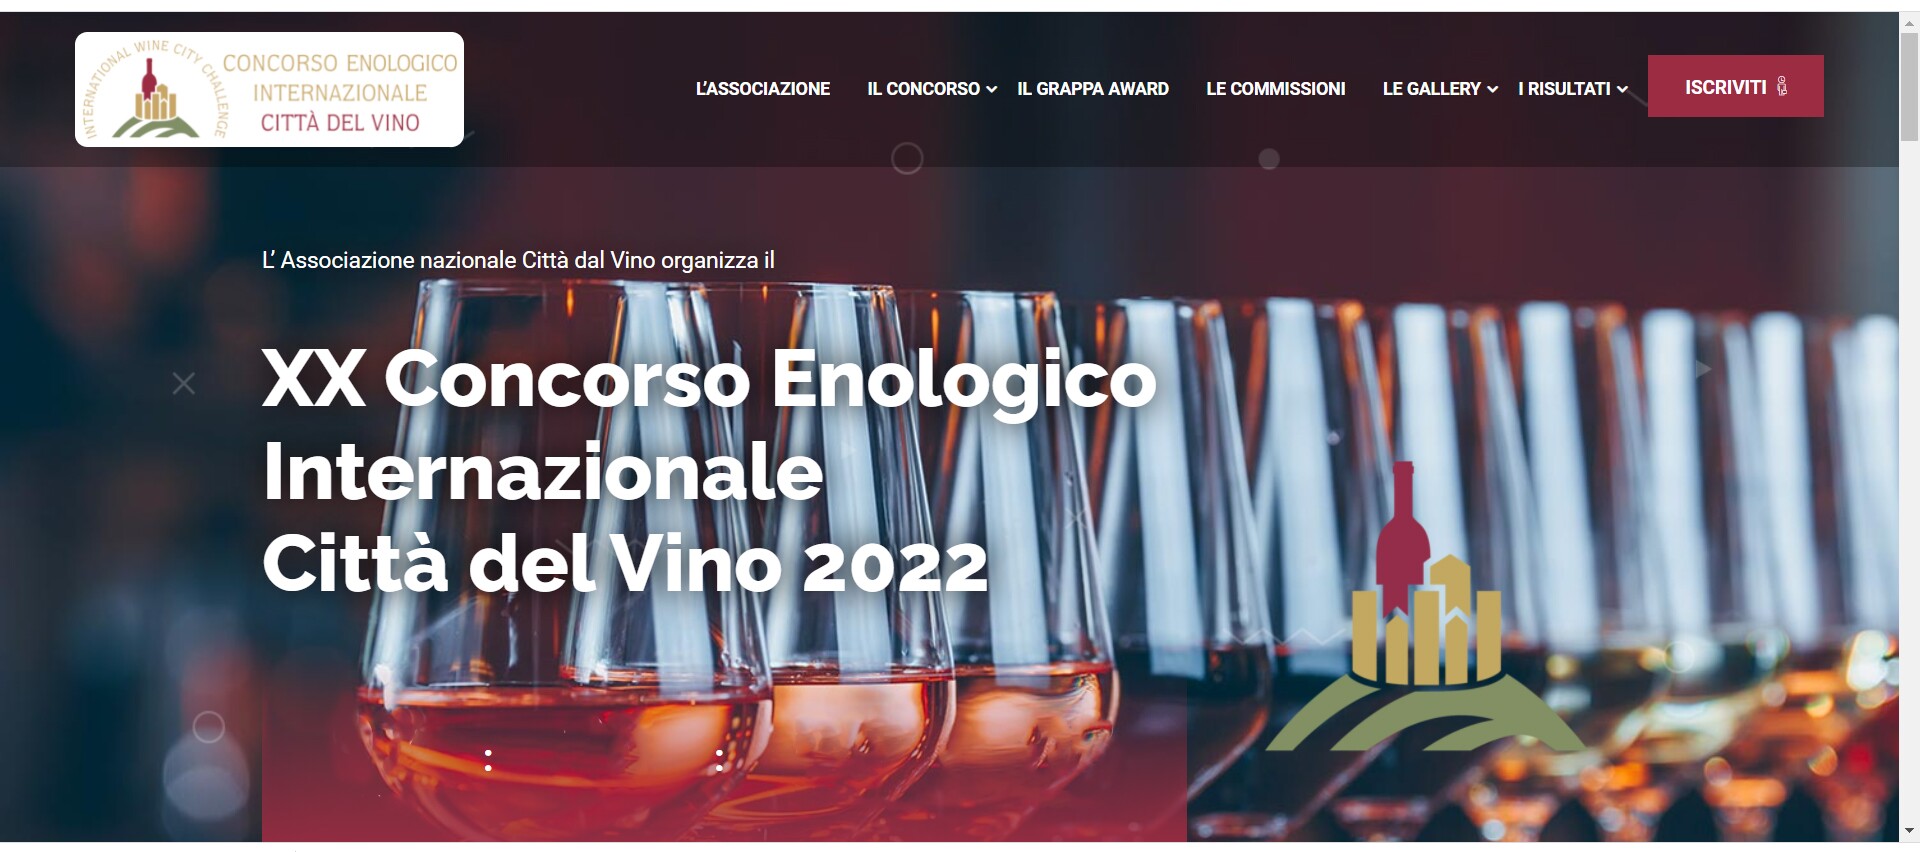  “Cittá del Vino” 2022 - Vinhos de Palmela premiados em certame internacional